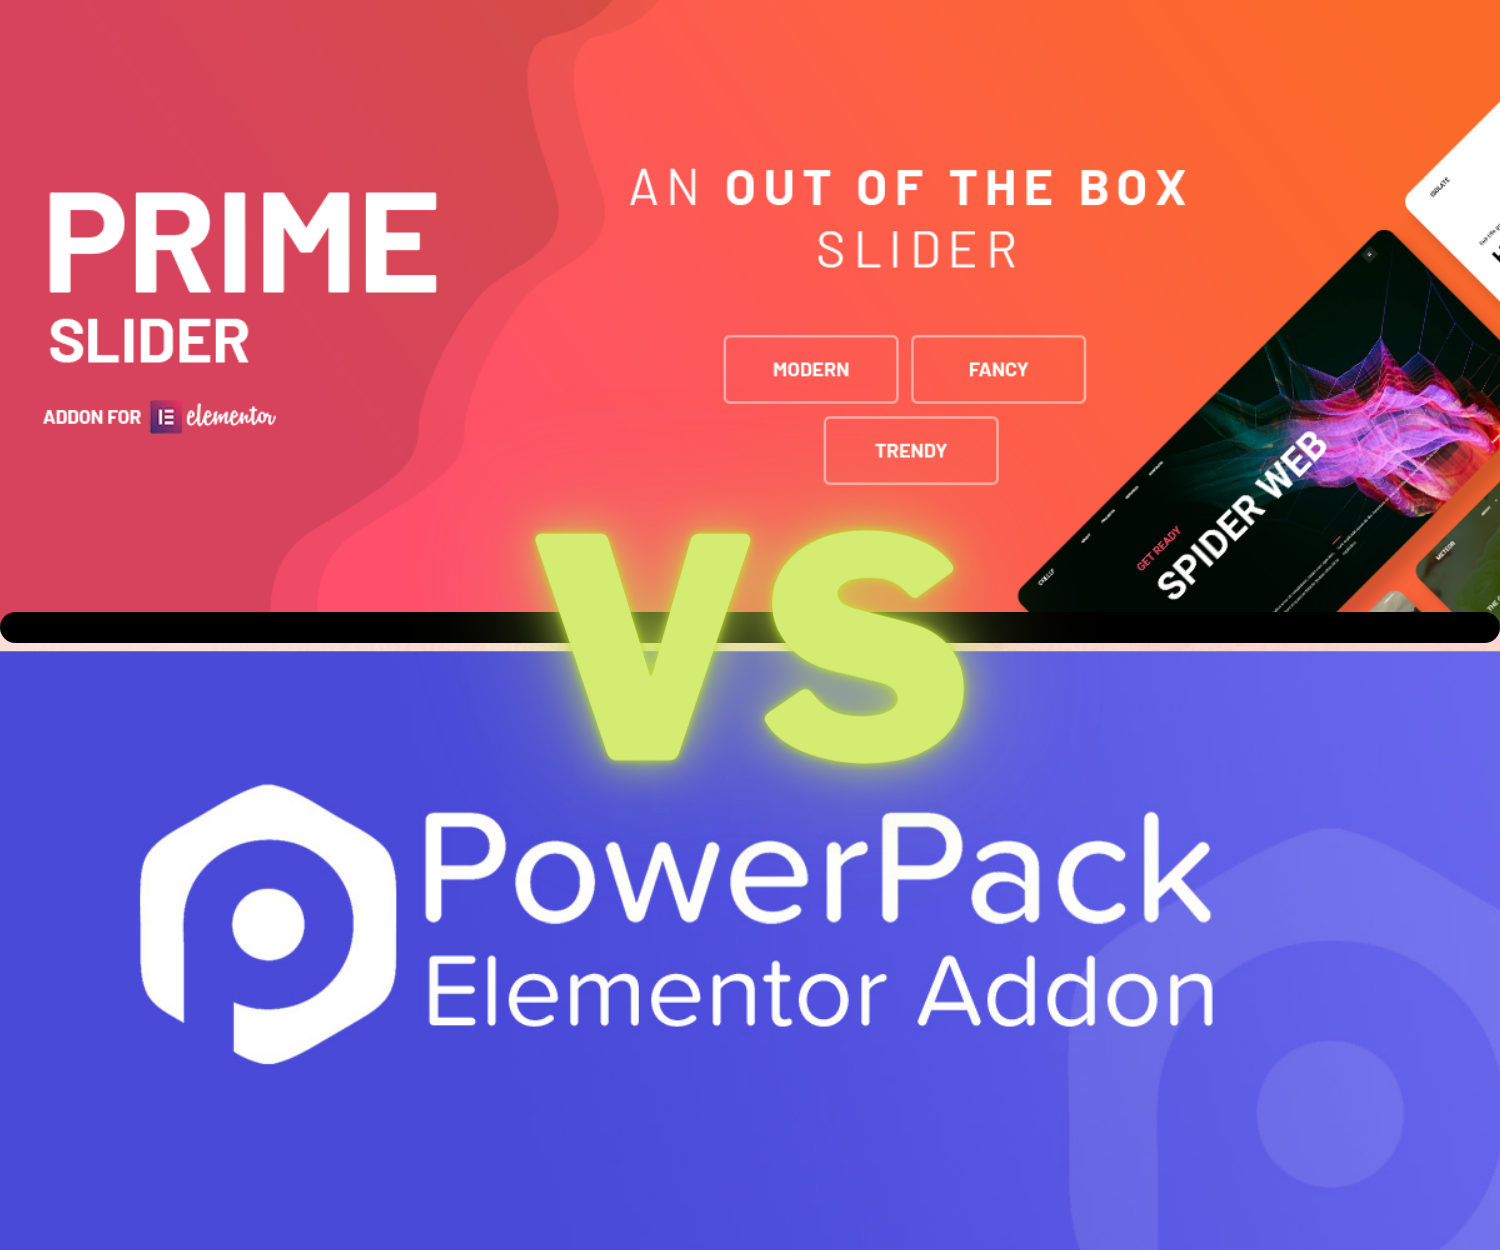 Prime Slider Vs PowerPack: Who is the winner?